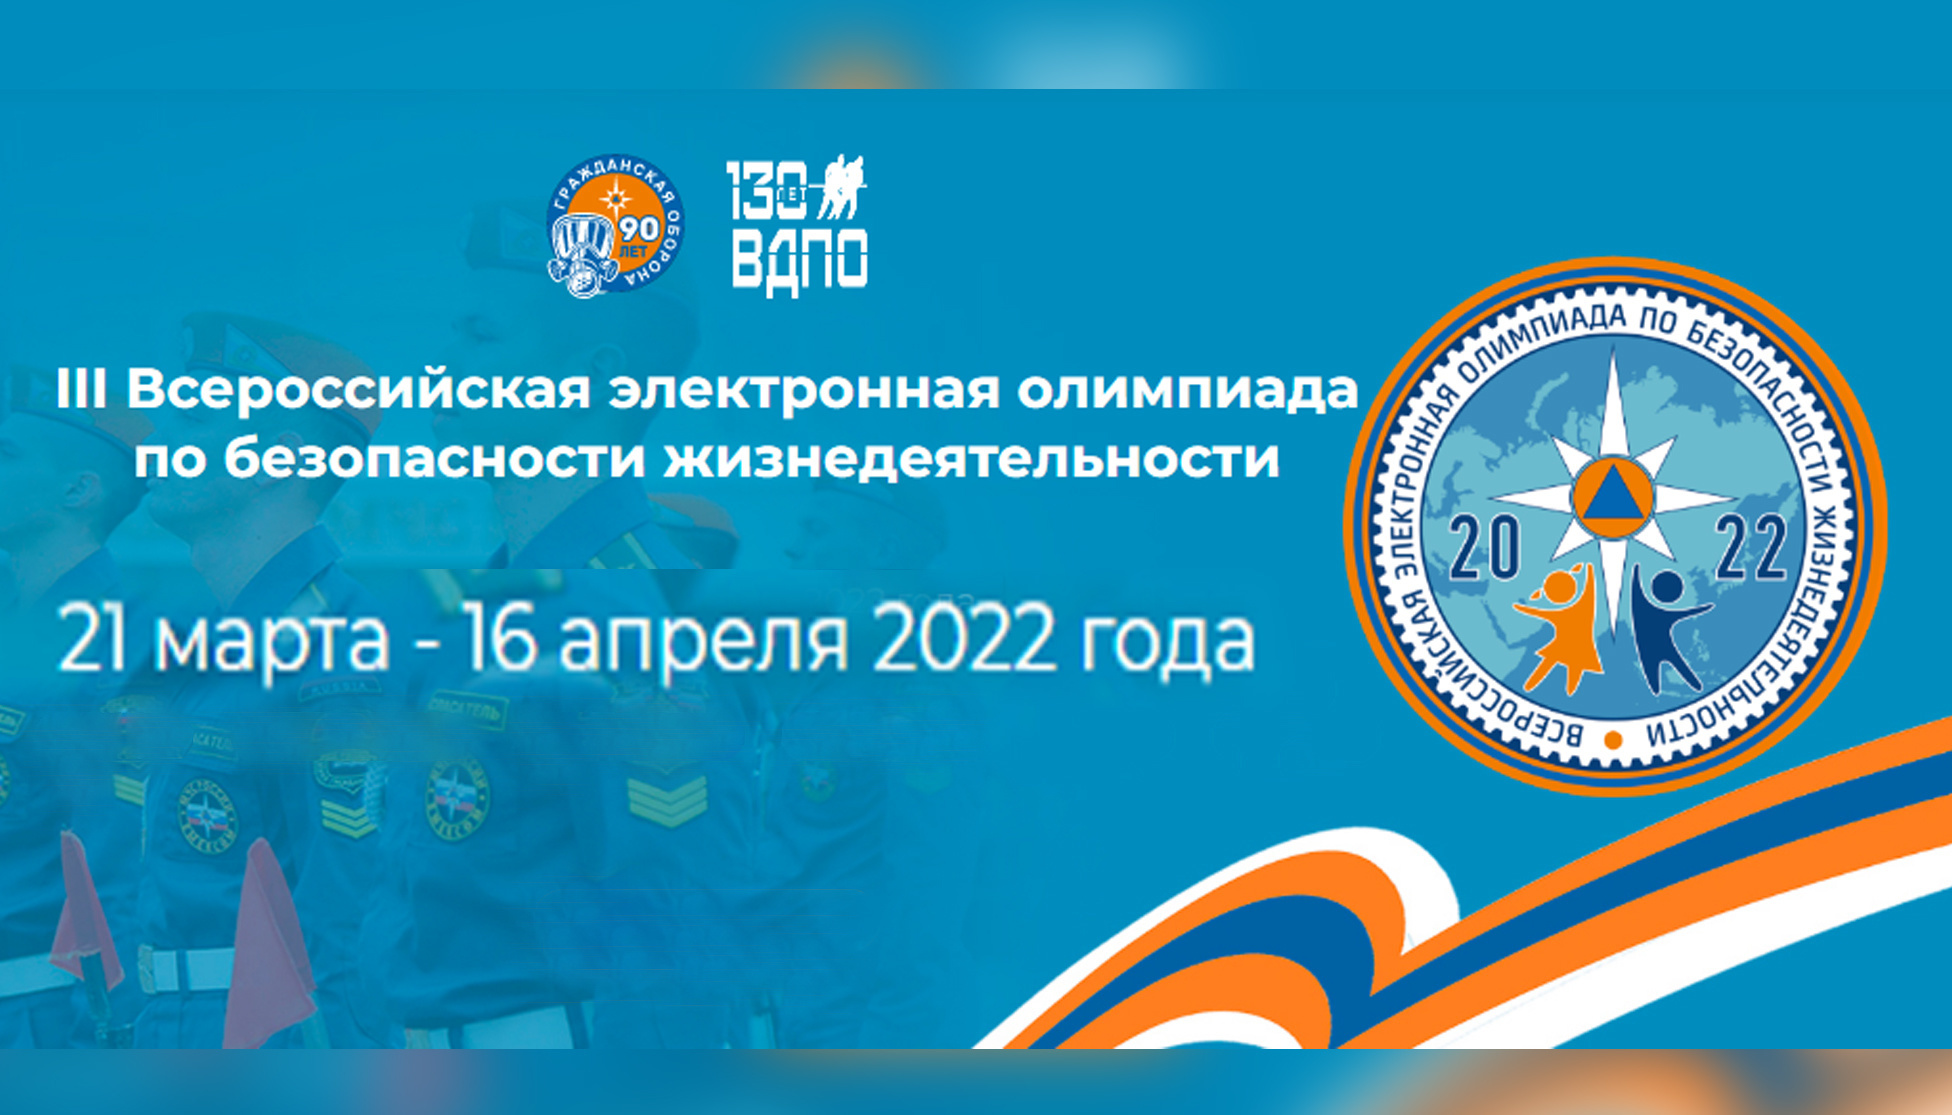 III Всероссийская электронная олимпиада по безопасности жизнедеятельности в 2022 году состоится с 21 марта по 16 апреля